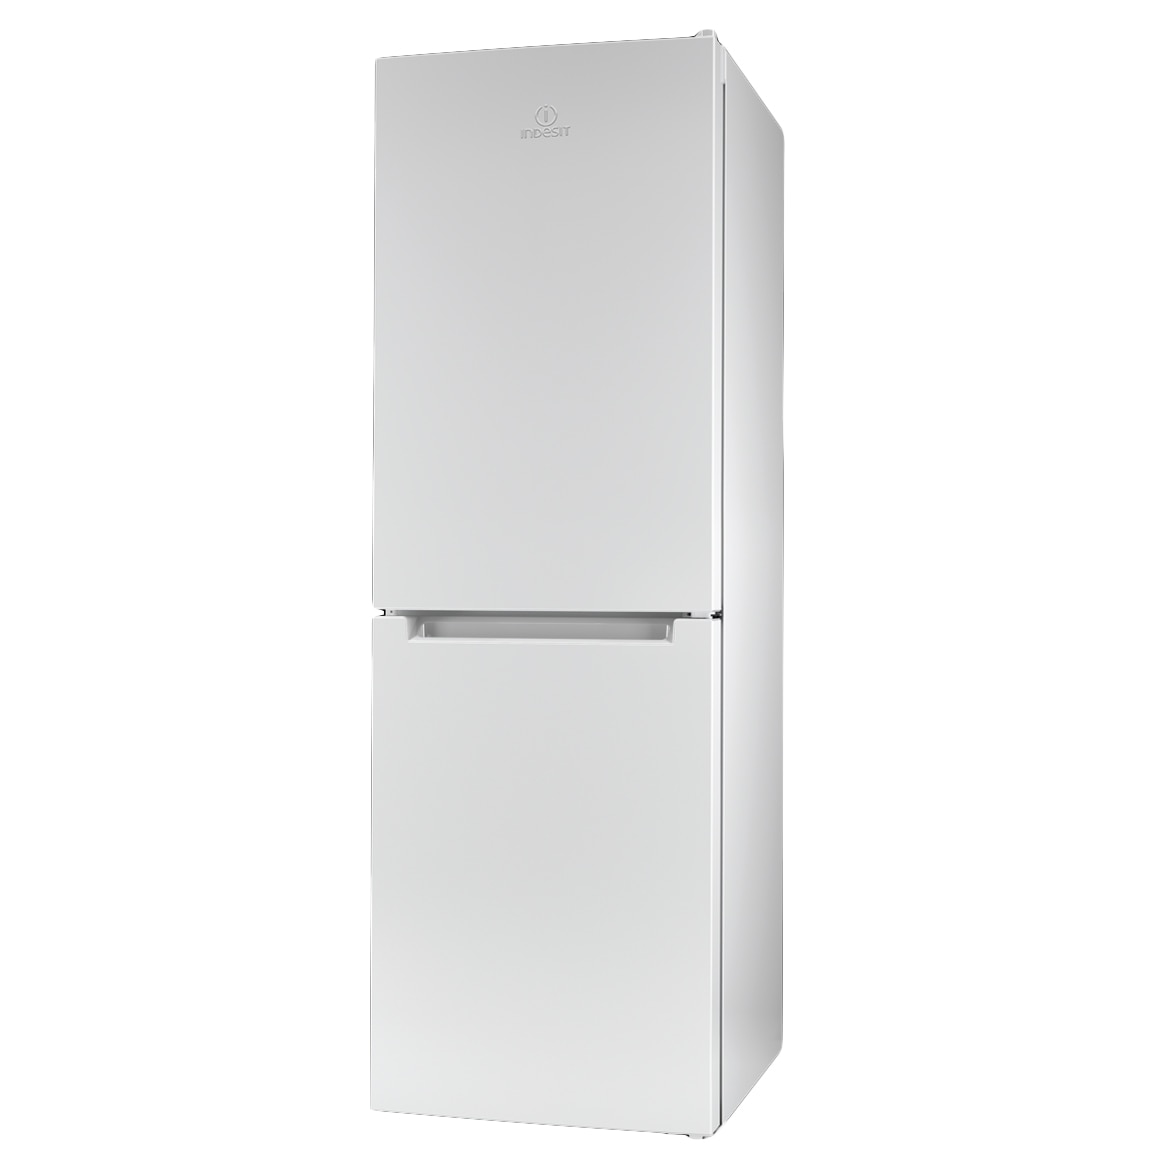 Хладилник Indesit LI70 FF1 W с обем от 274 л.